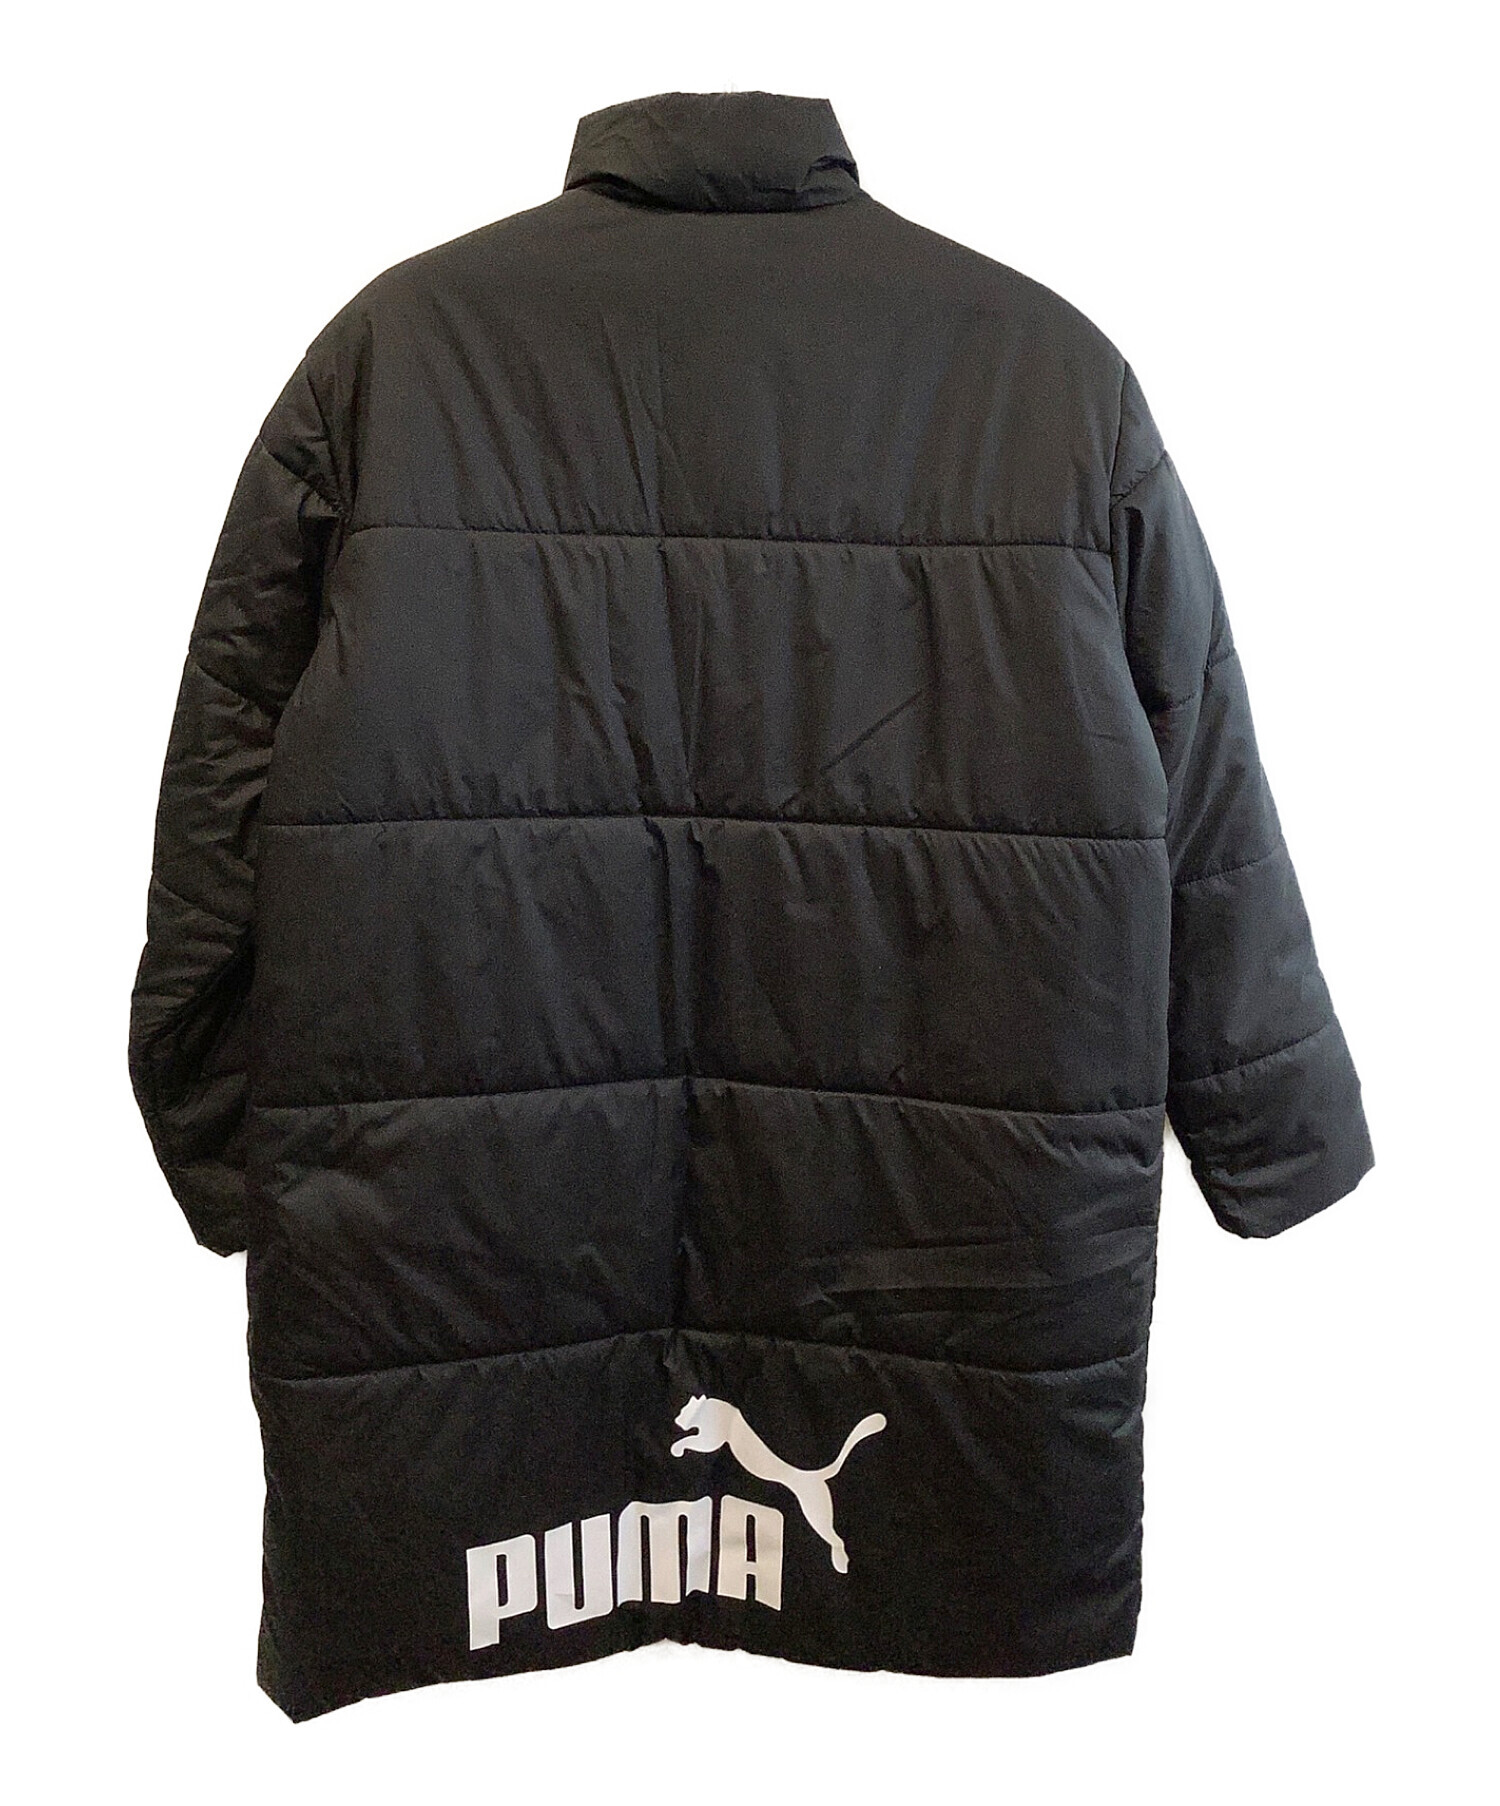 PUMA (プーマ) ベンチコート ブラック サイズ:XL